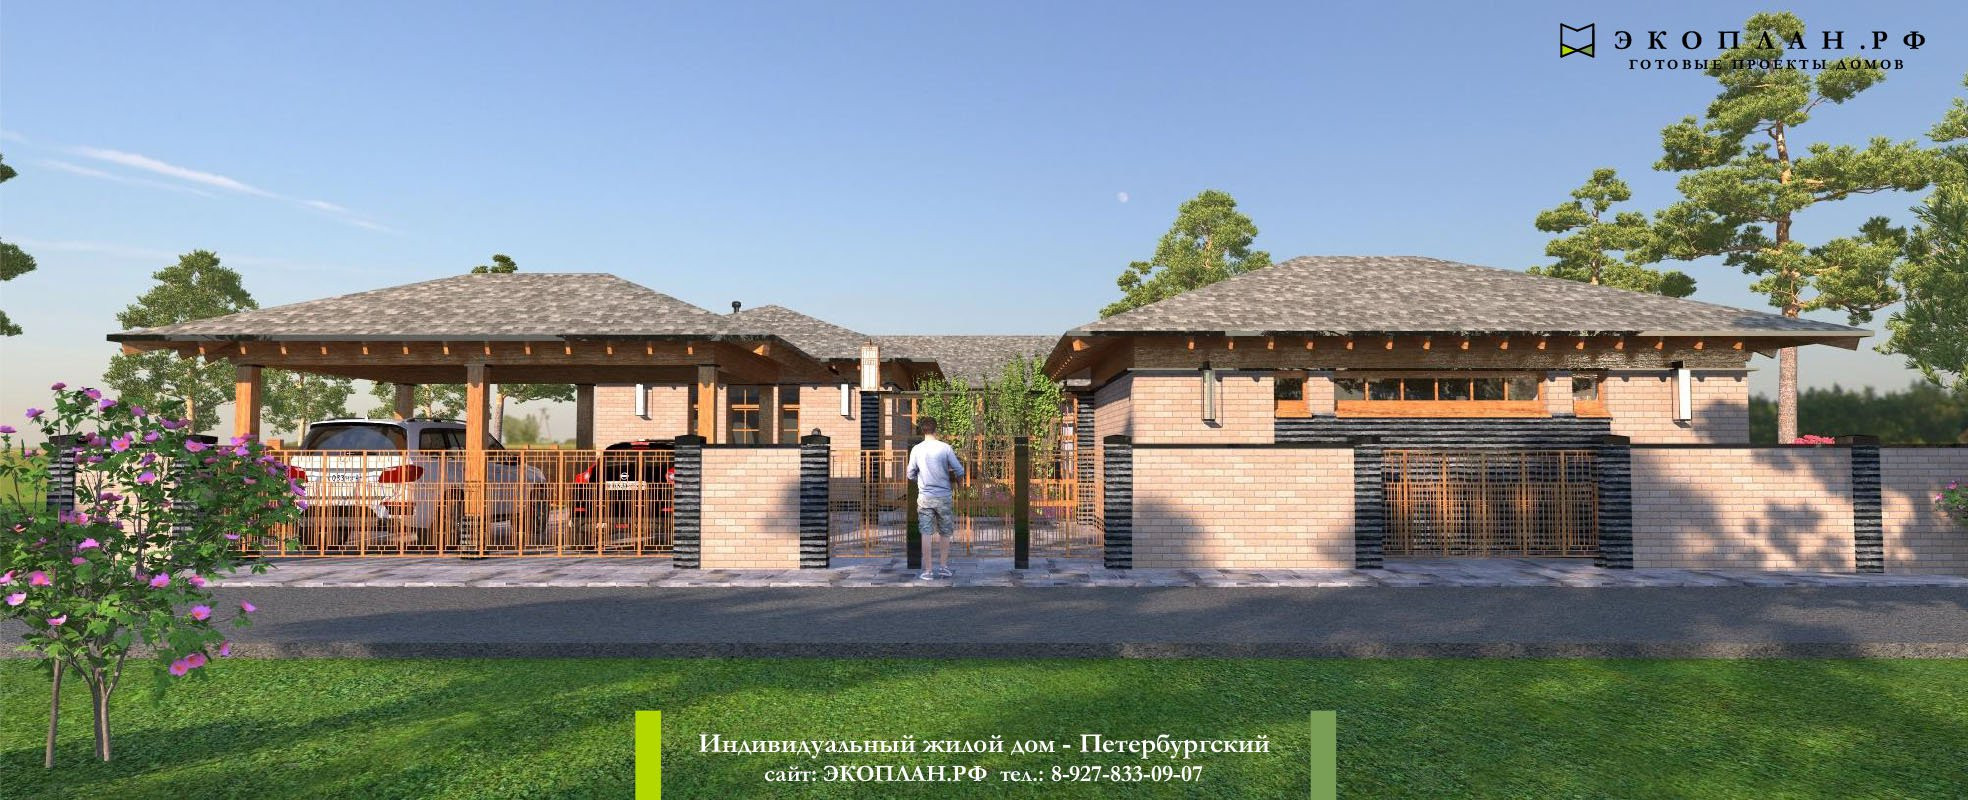 Проект дома «Петербургский», вид 1